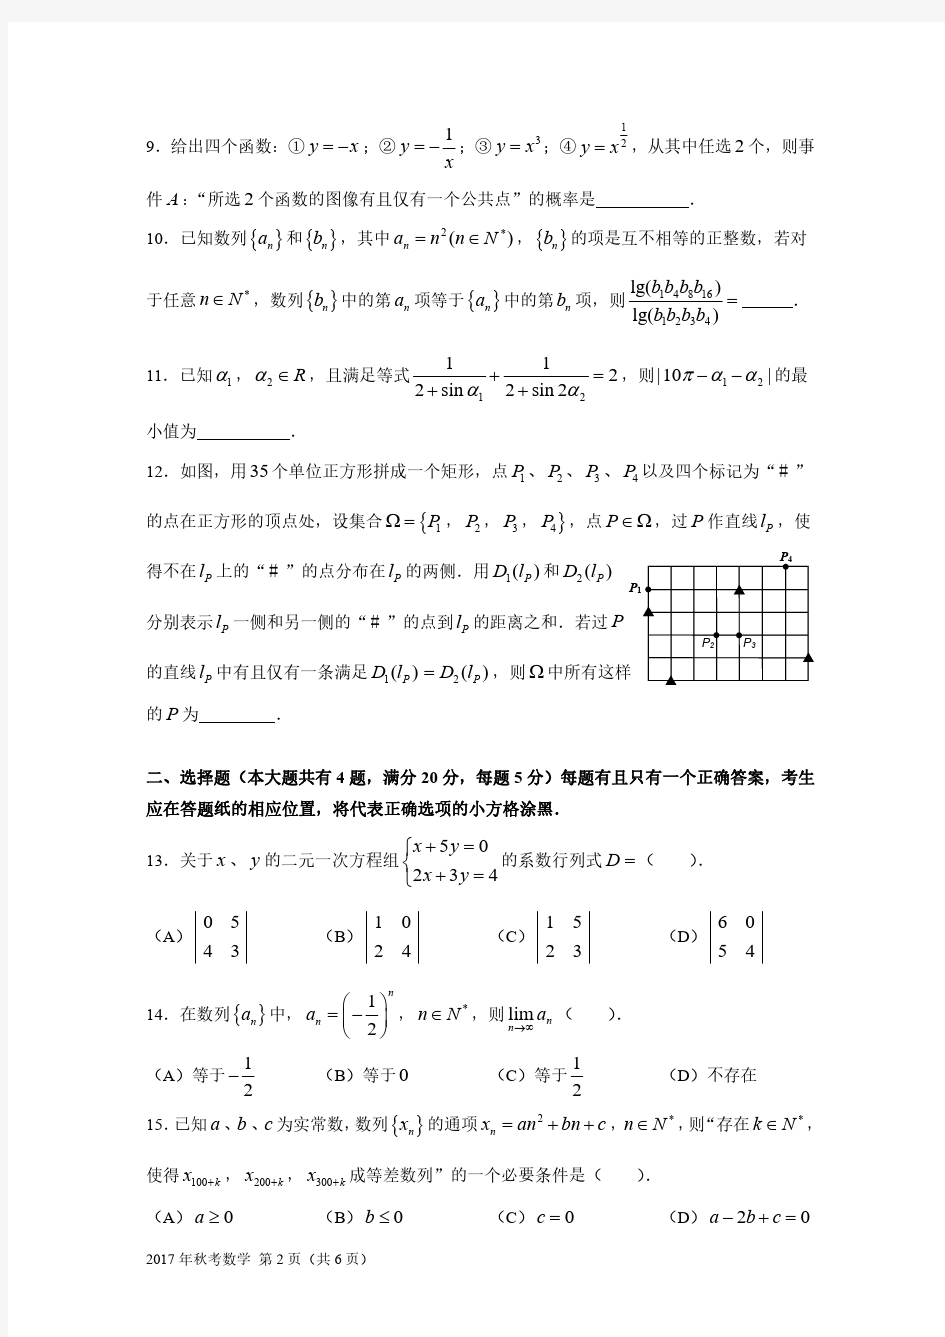 2017年上海高考数学试卷